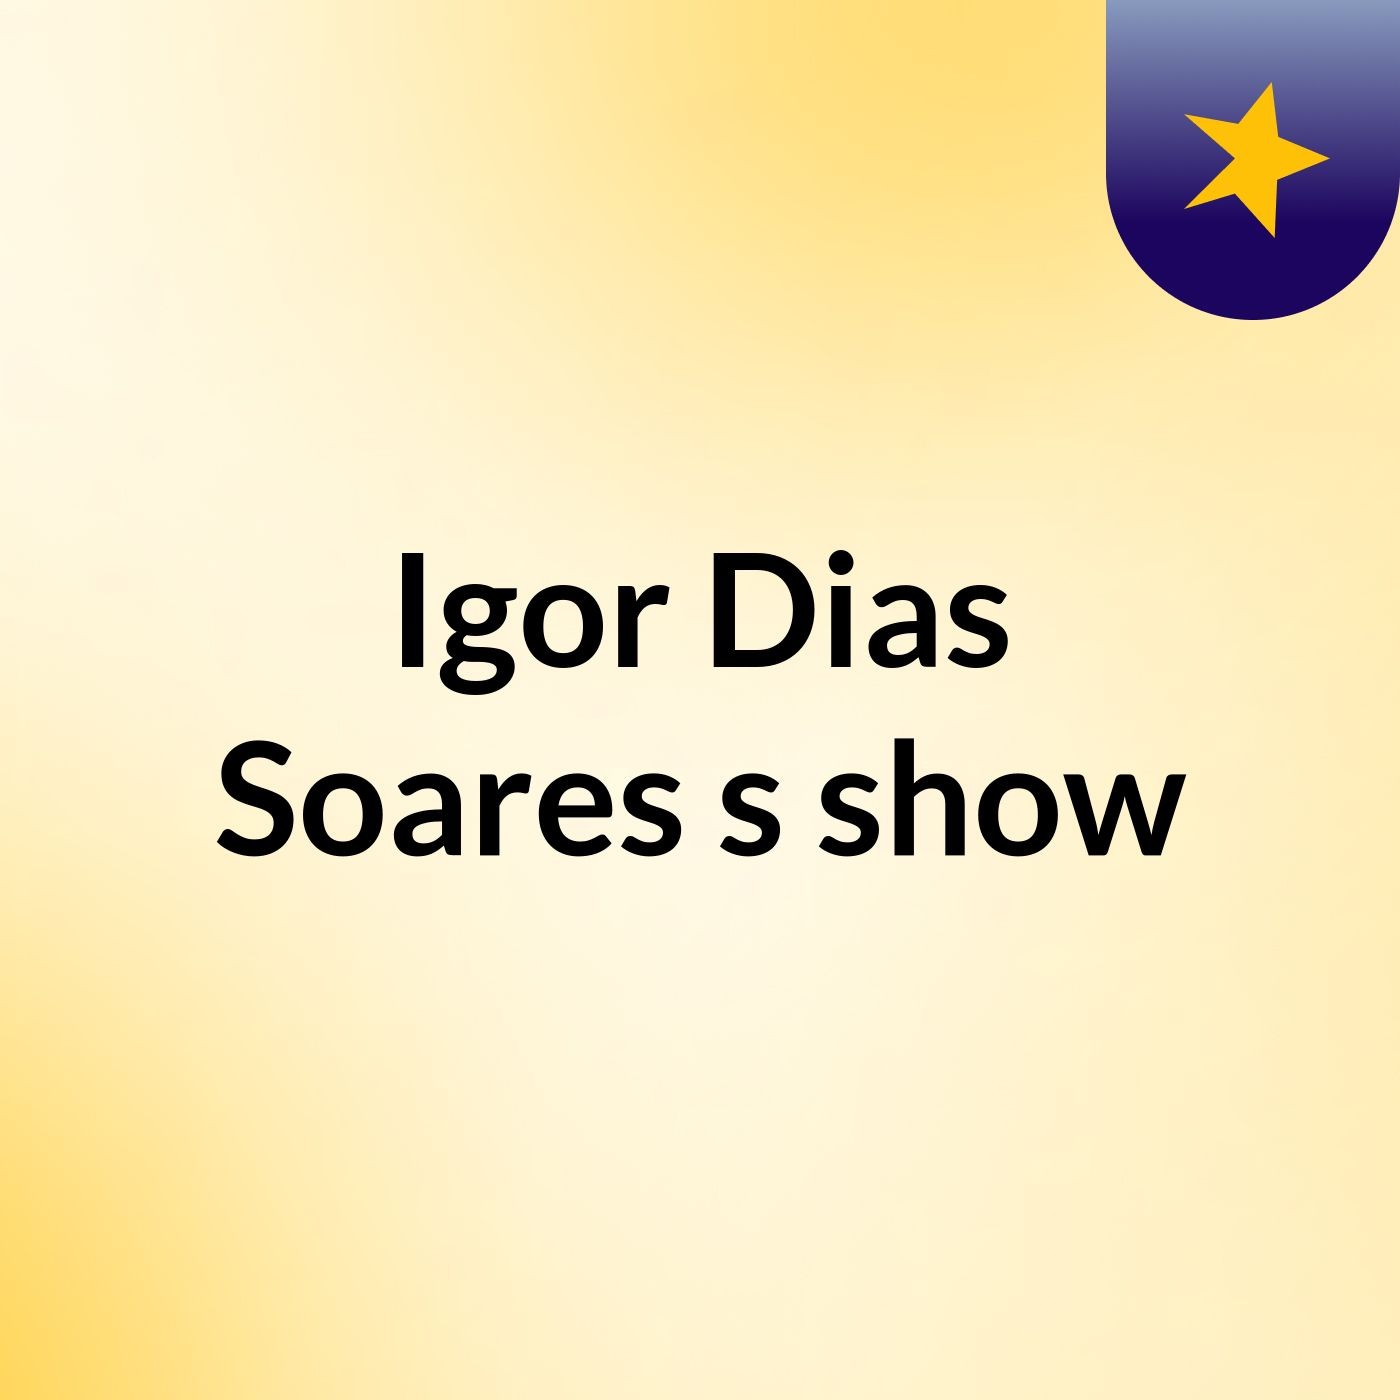 Igor Dias Soares's show